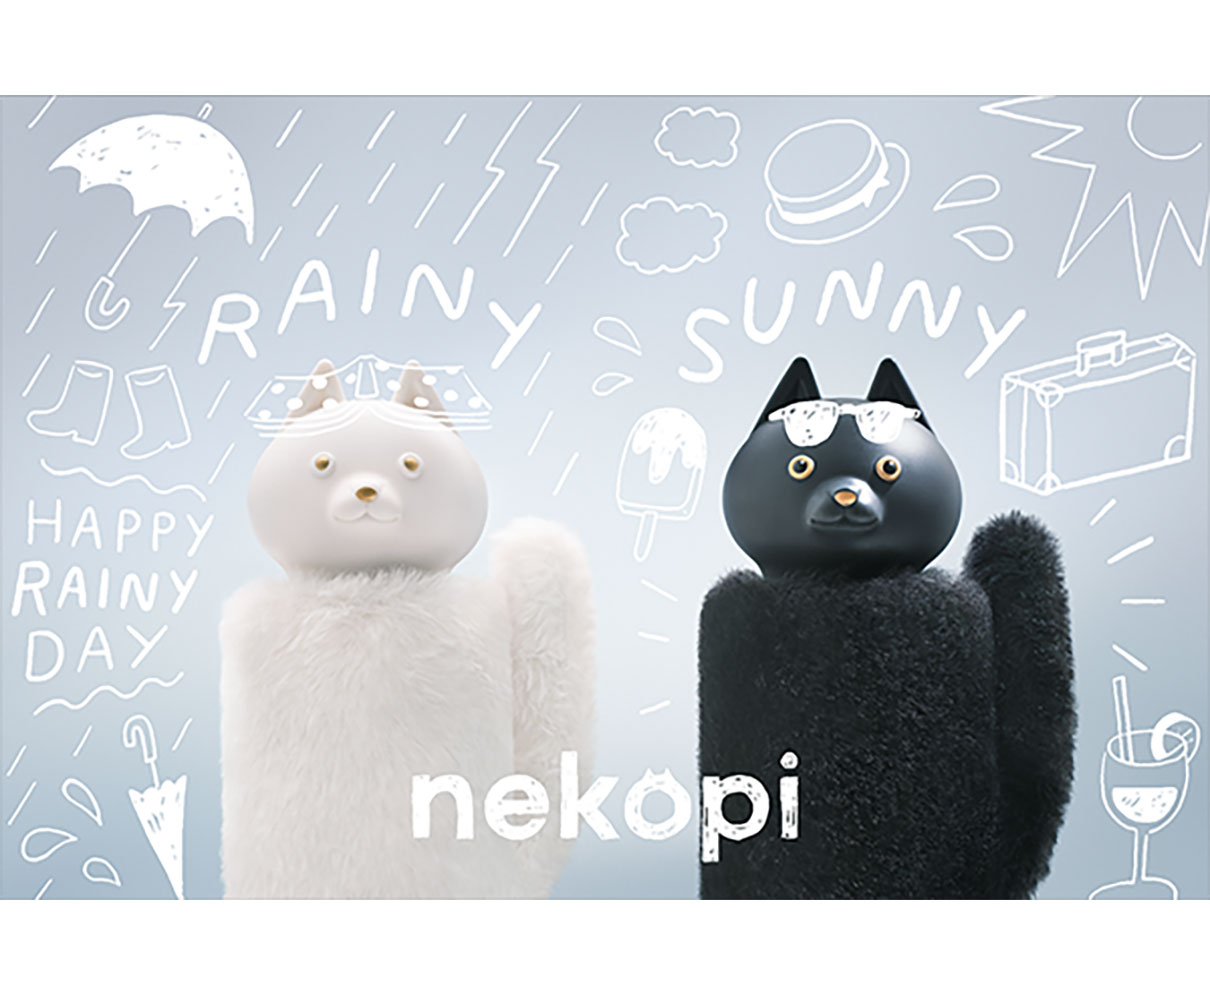 ふわふわカバーから覗くキョトン顔がかわいい〜。折りたたみ傘「nekopi」は、日傘にもなるハイスペアイテム